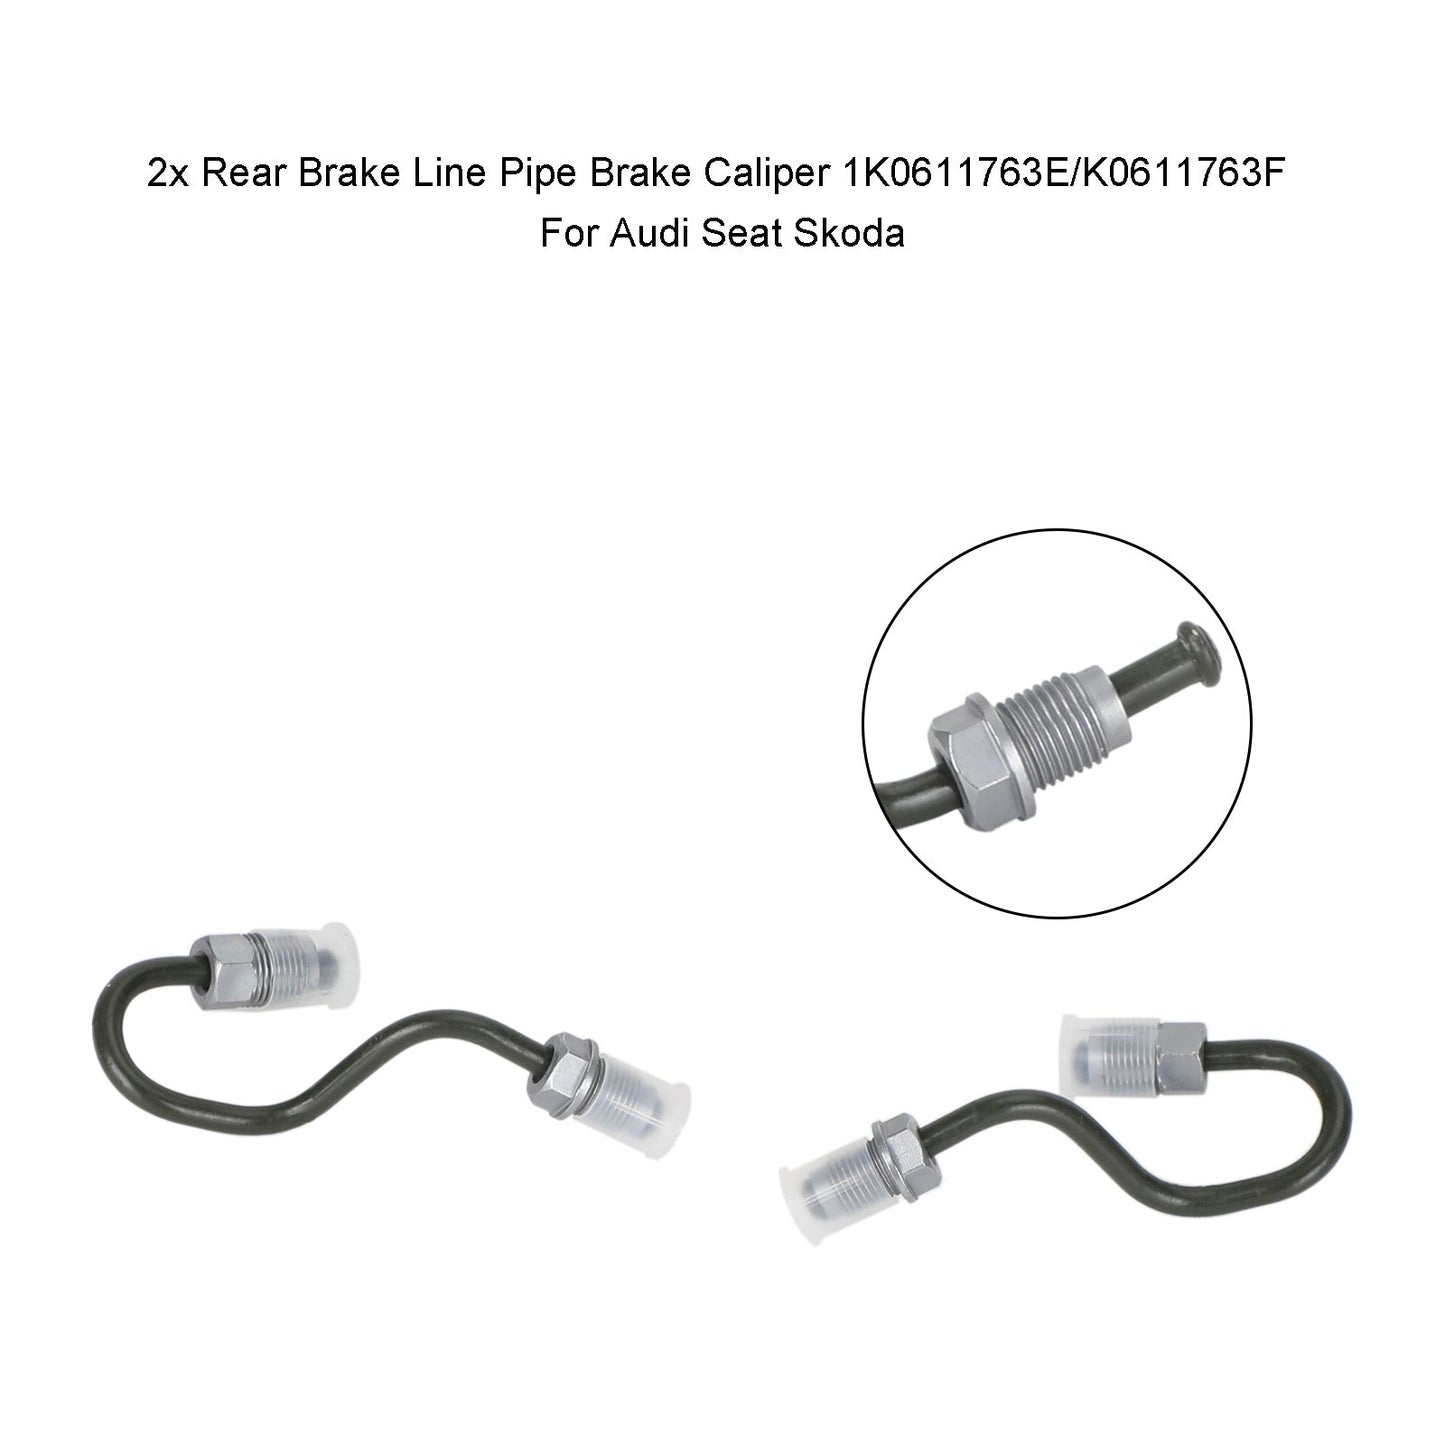 2x Rear Brake Line Pipe Brake Caliper 1K0611763E/K0611763F For Audi Seat Skoda